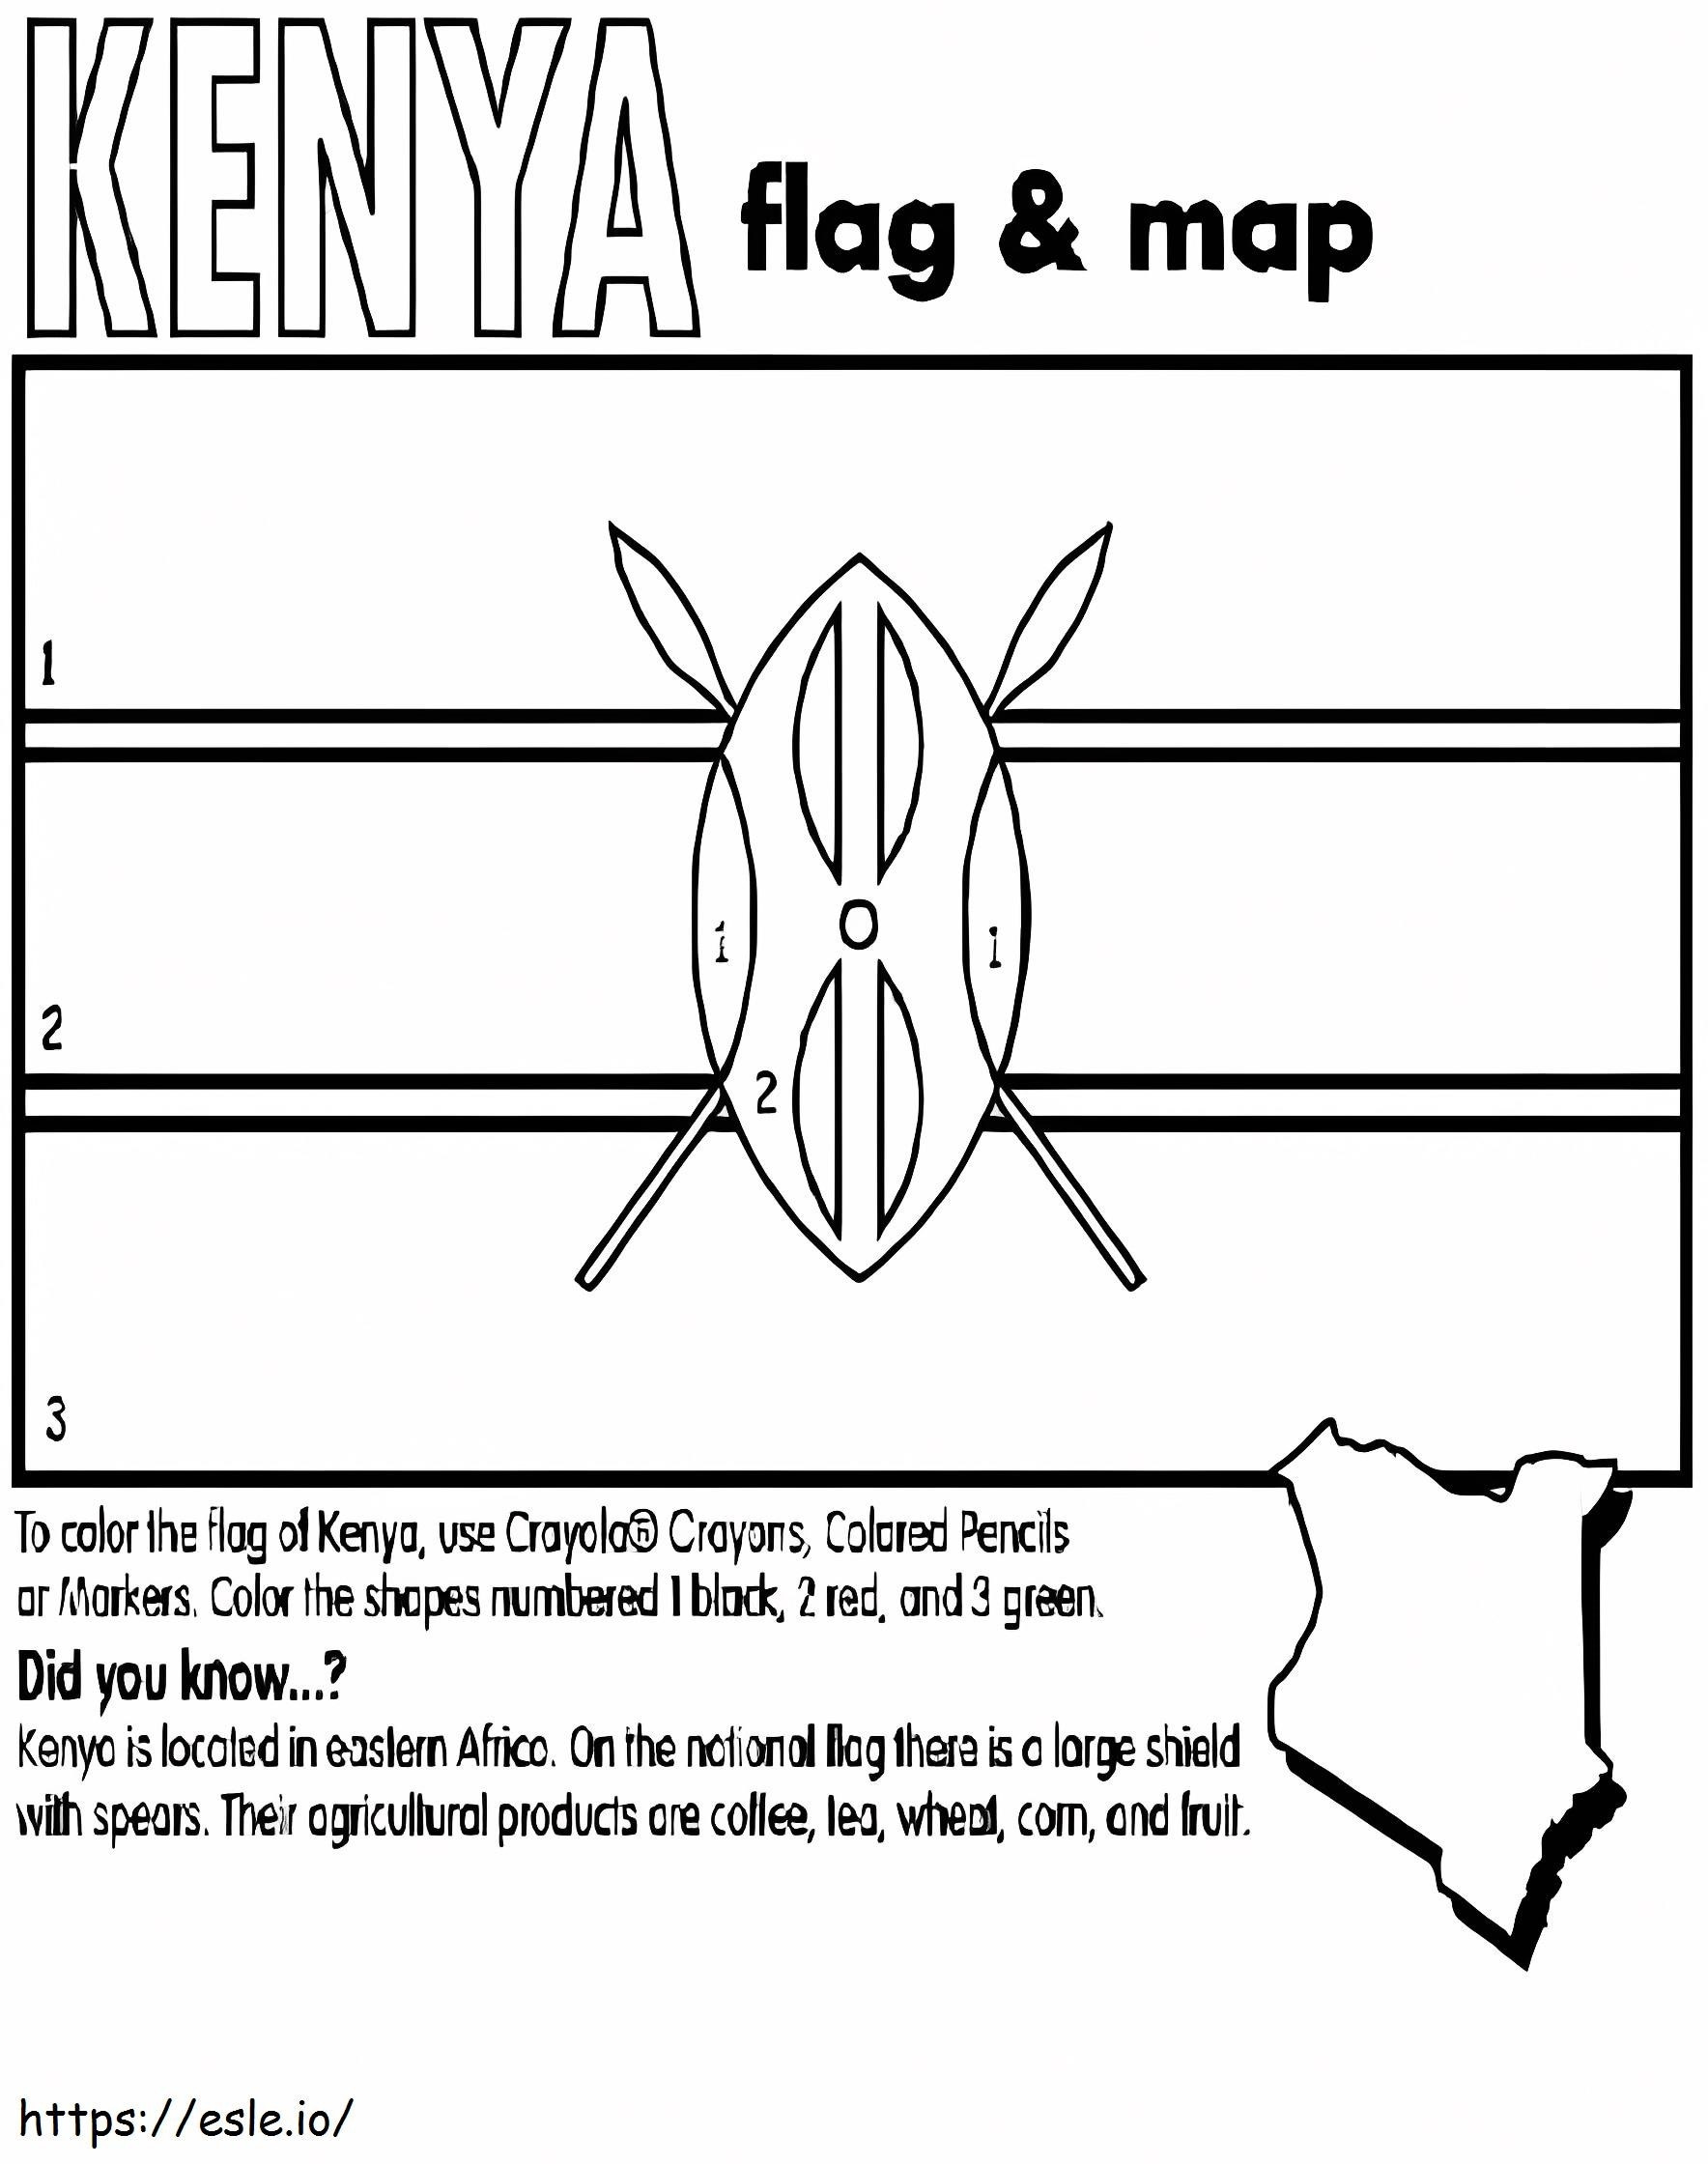 Bandera y mapa de Kenia para colorear